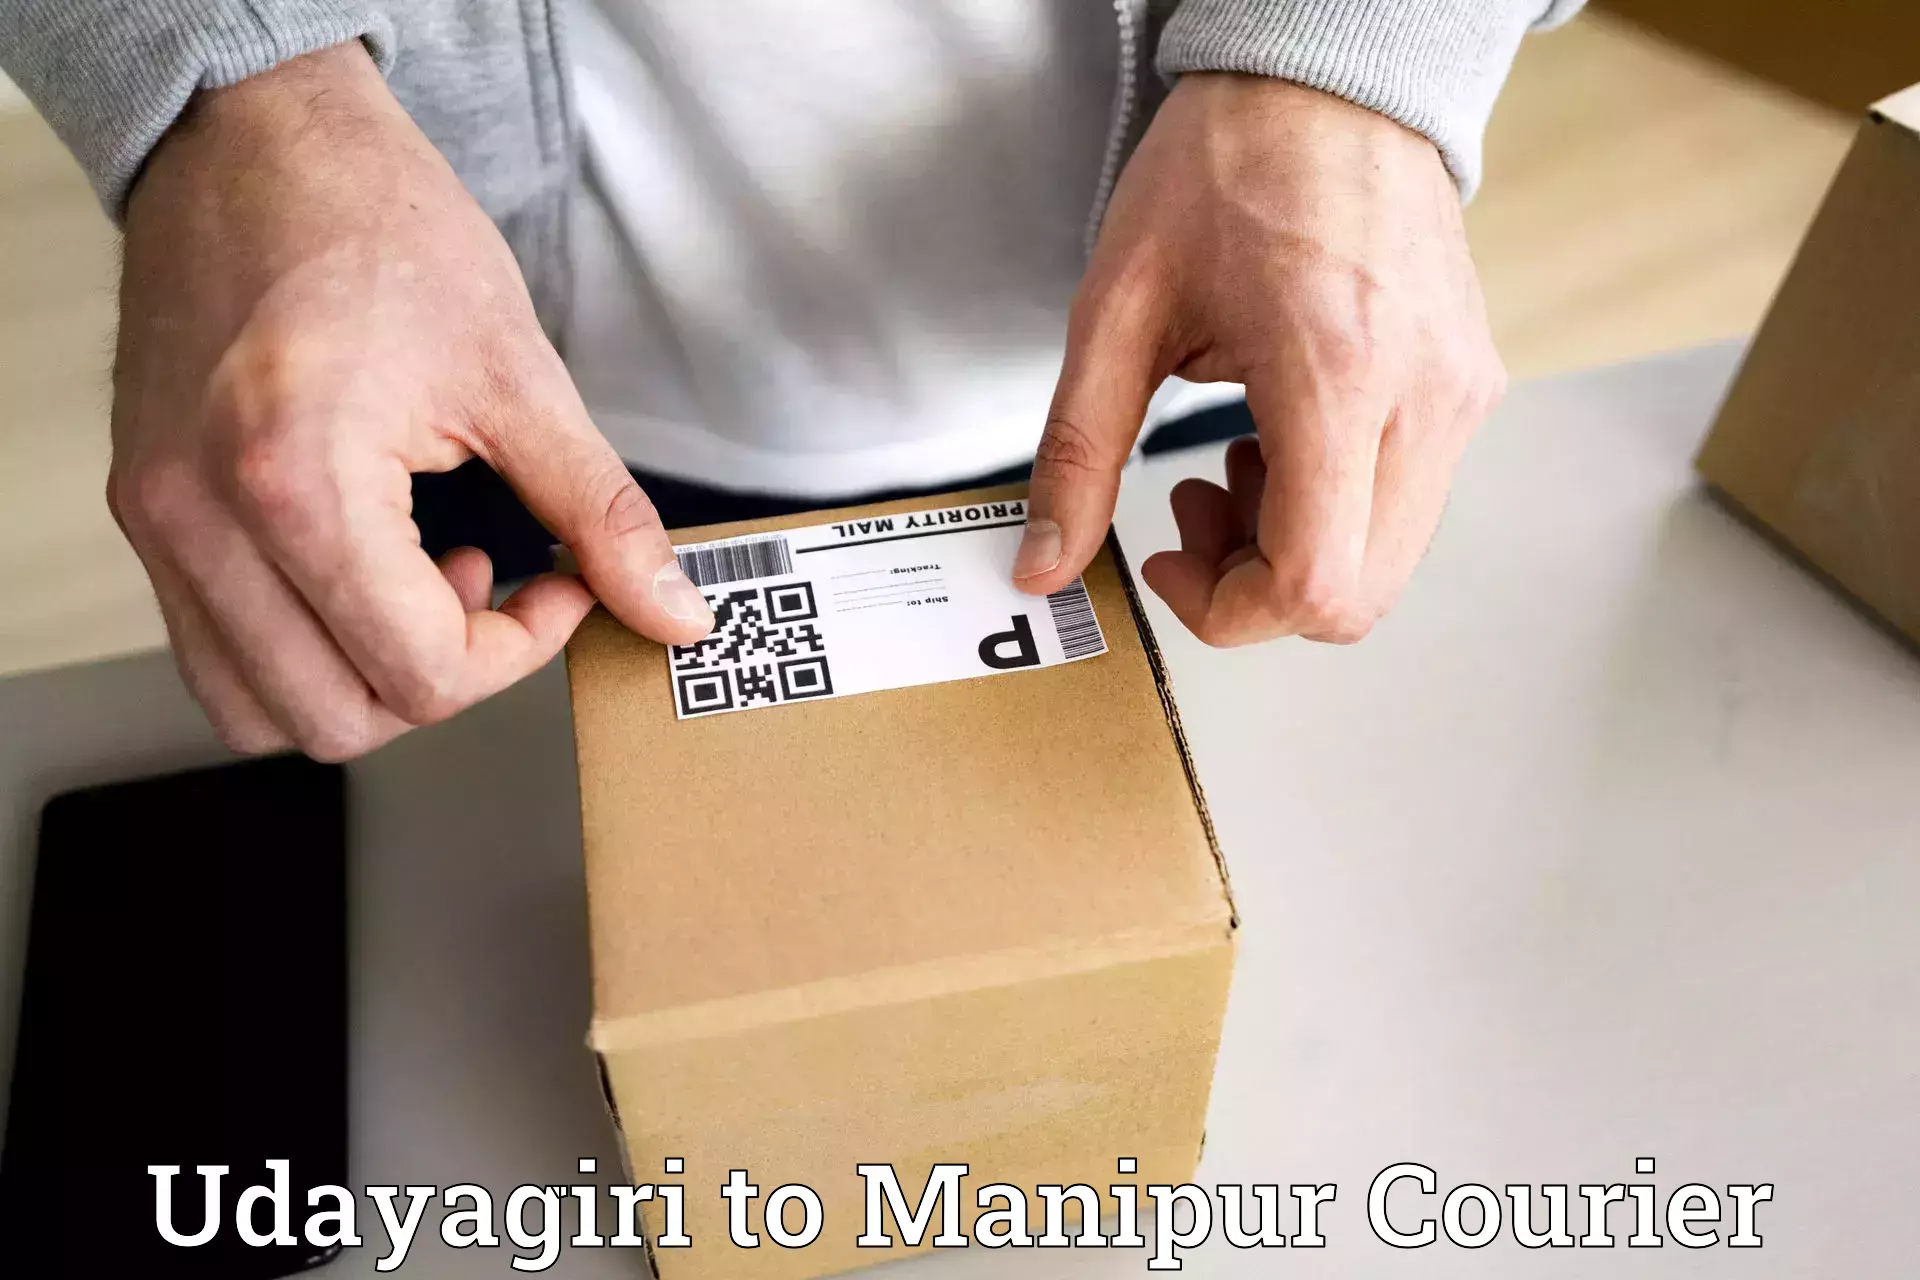 Comprehensive parcel tracking Udayagiri to Moirang